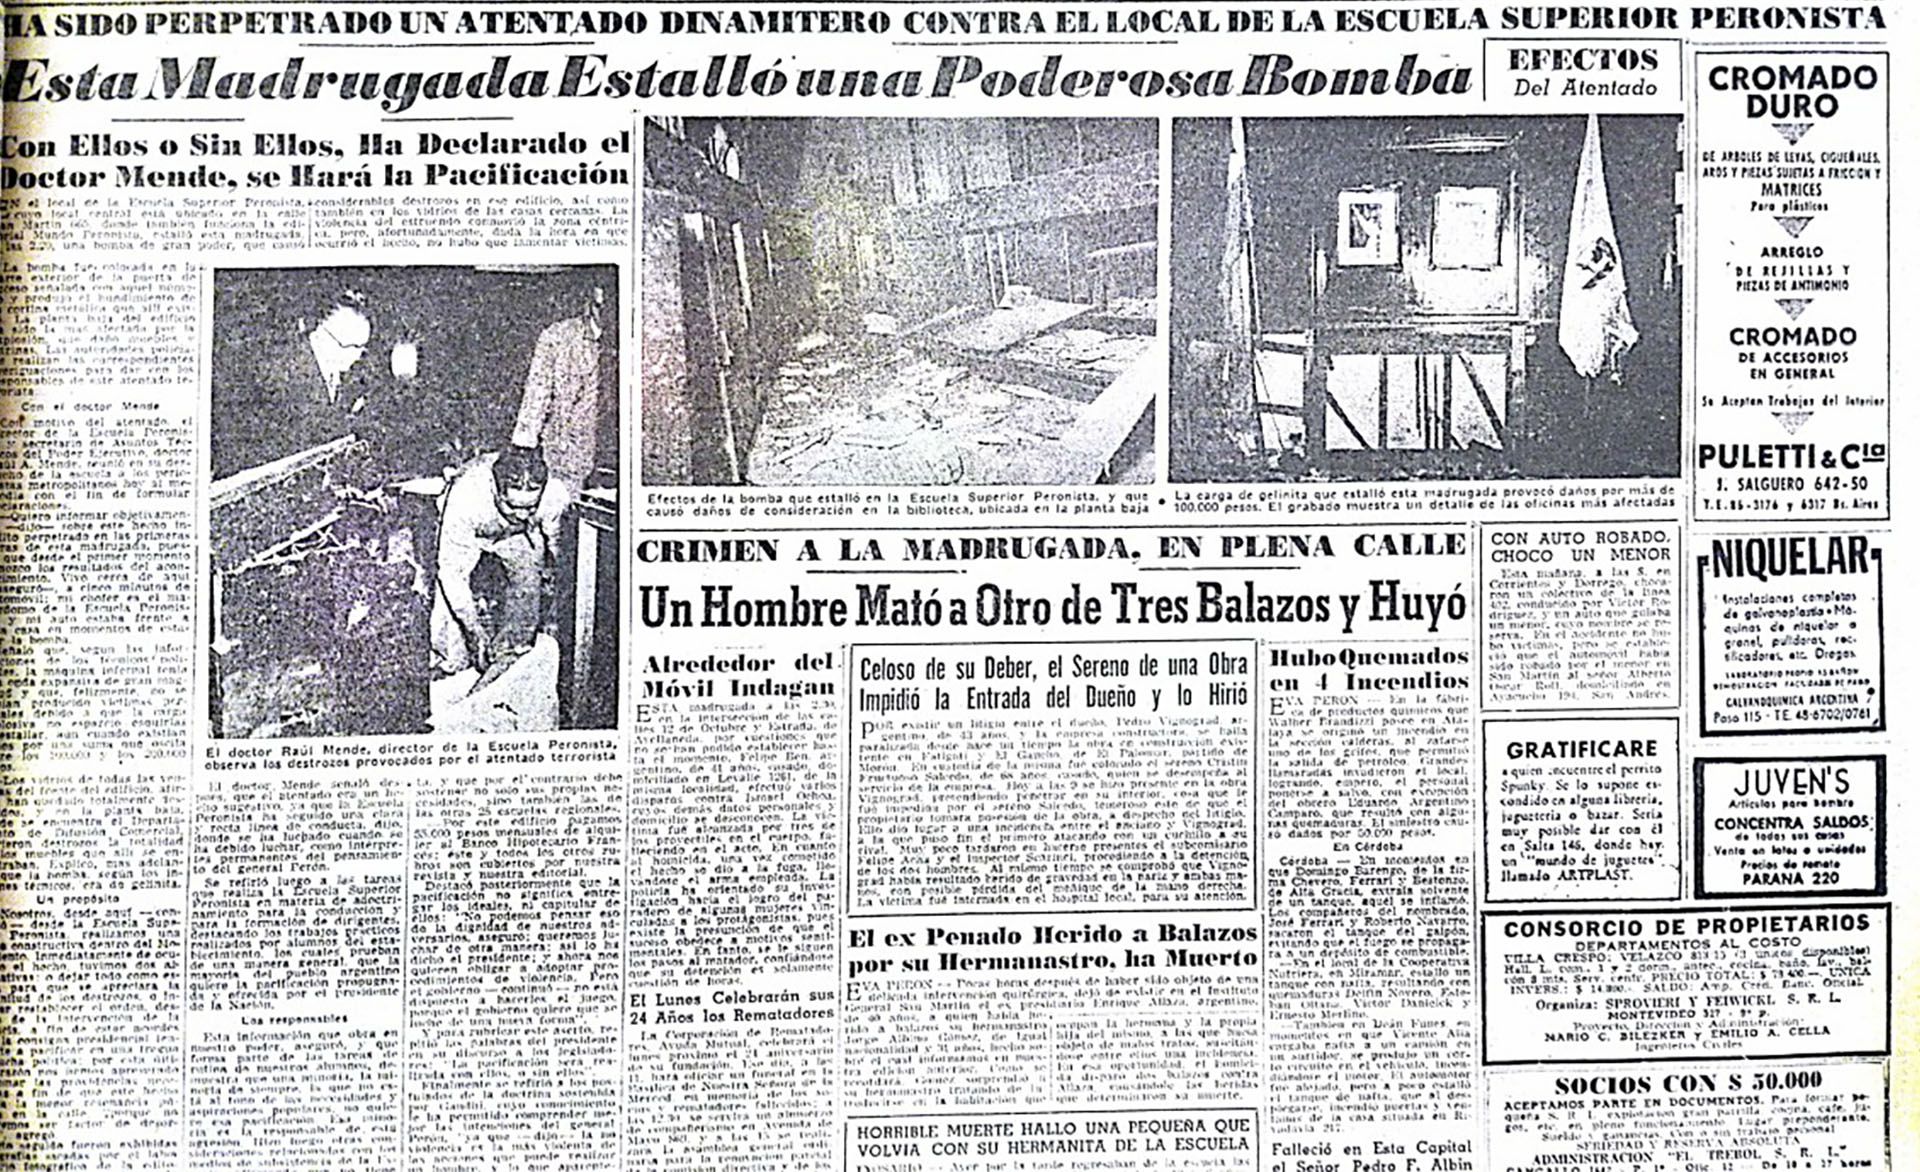 Muniz Barreto participó en 1954 de un frustrado atentado contra la vida de Perón. Un año después, volvió a Buenos Aires antes del bombardeó a la Plaza de Mayo del 16 de junio, y había elaborado un un nuevo y preciso atentado: volar por los aires la Escuela Superior Peronista